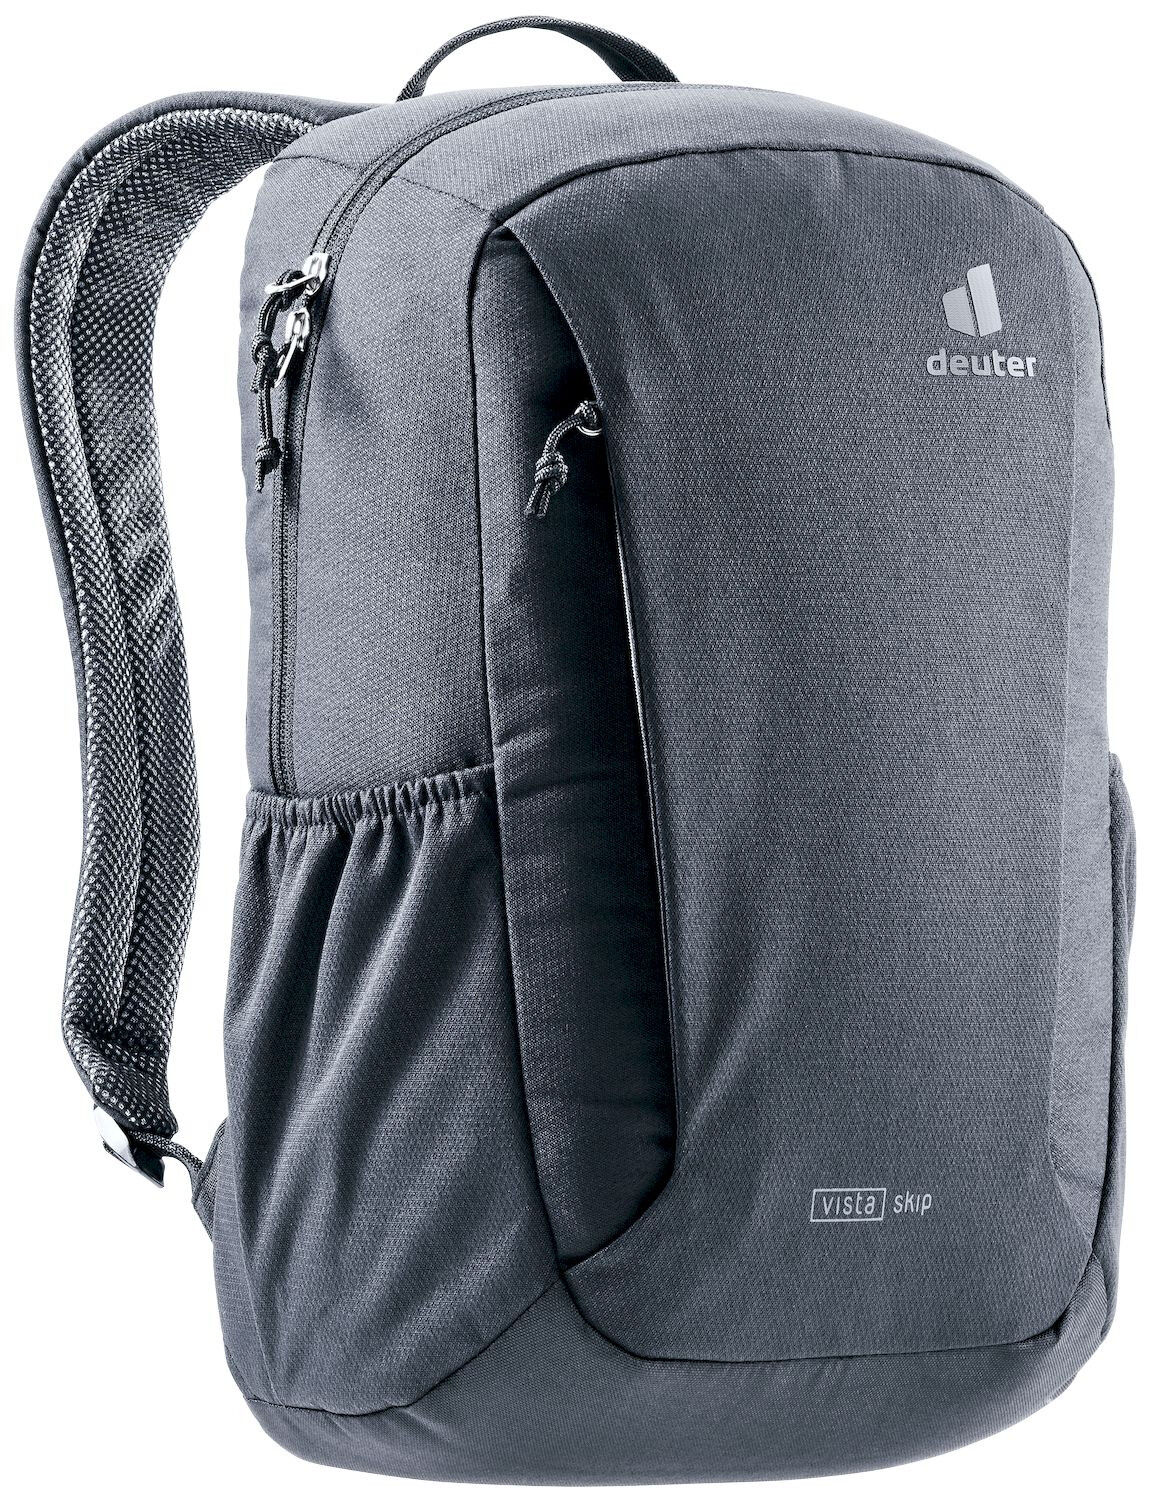 Deuter Vista Skip - Backpack